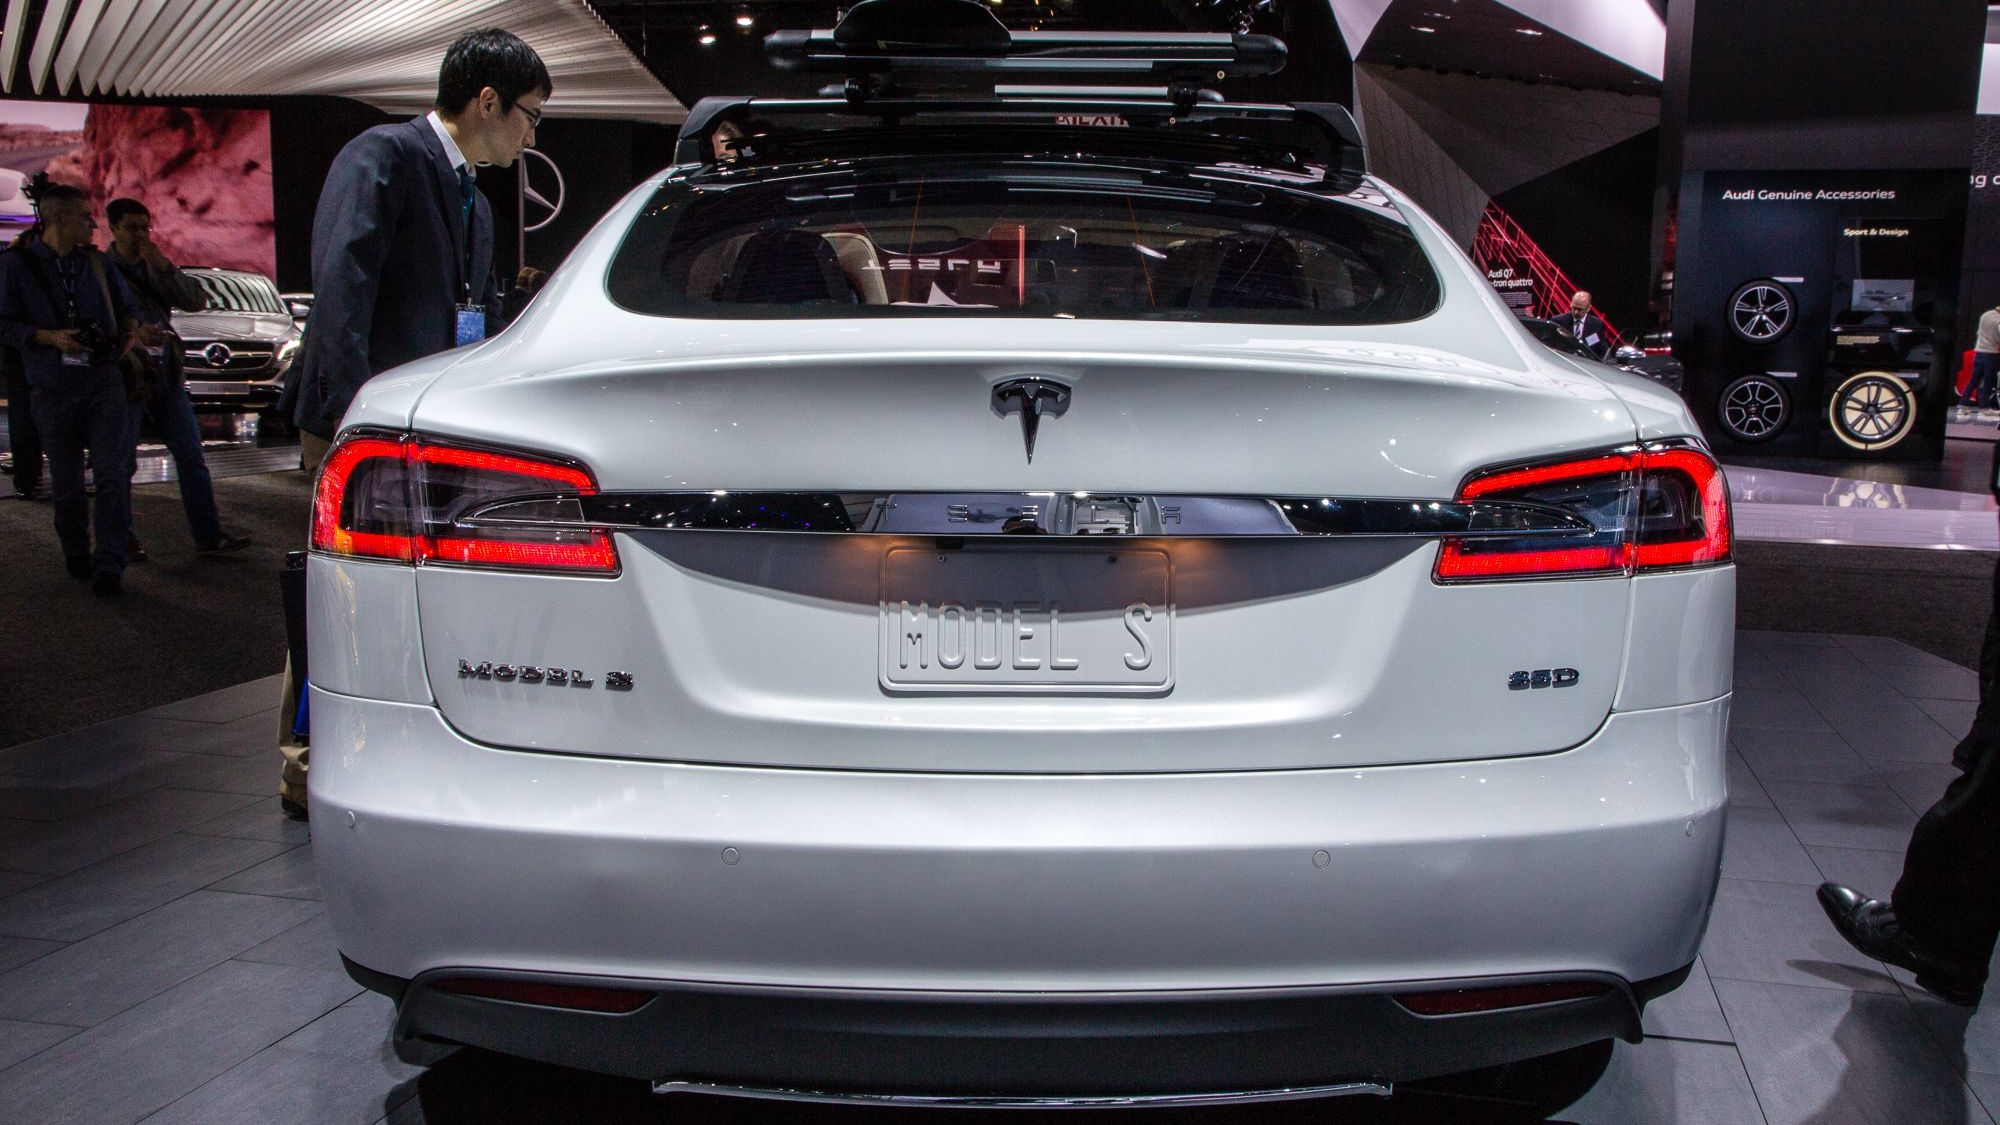 Tesla Model S 85D, 2015 Detroit Auto Show